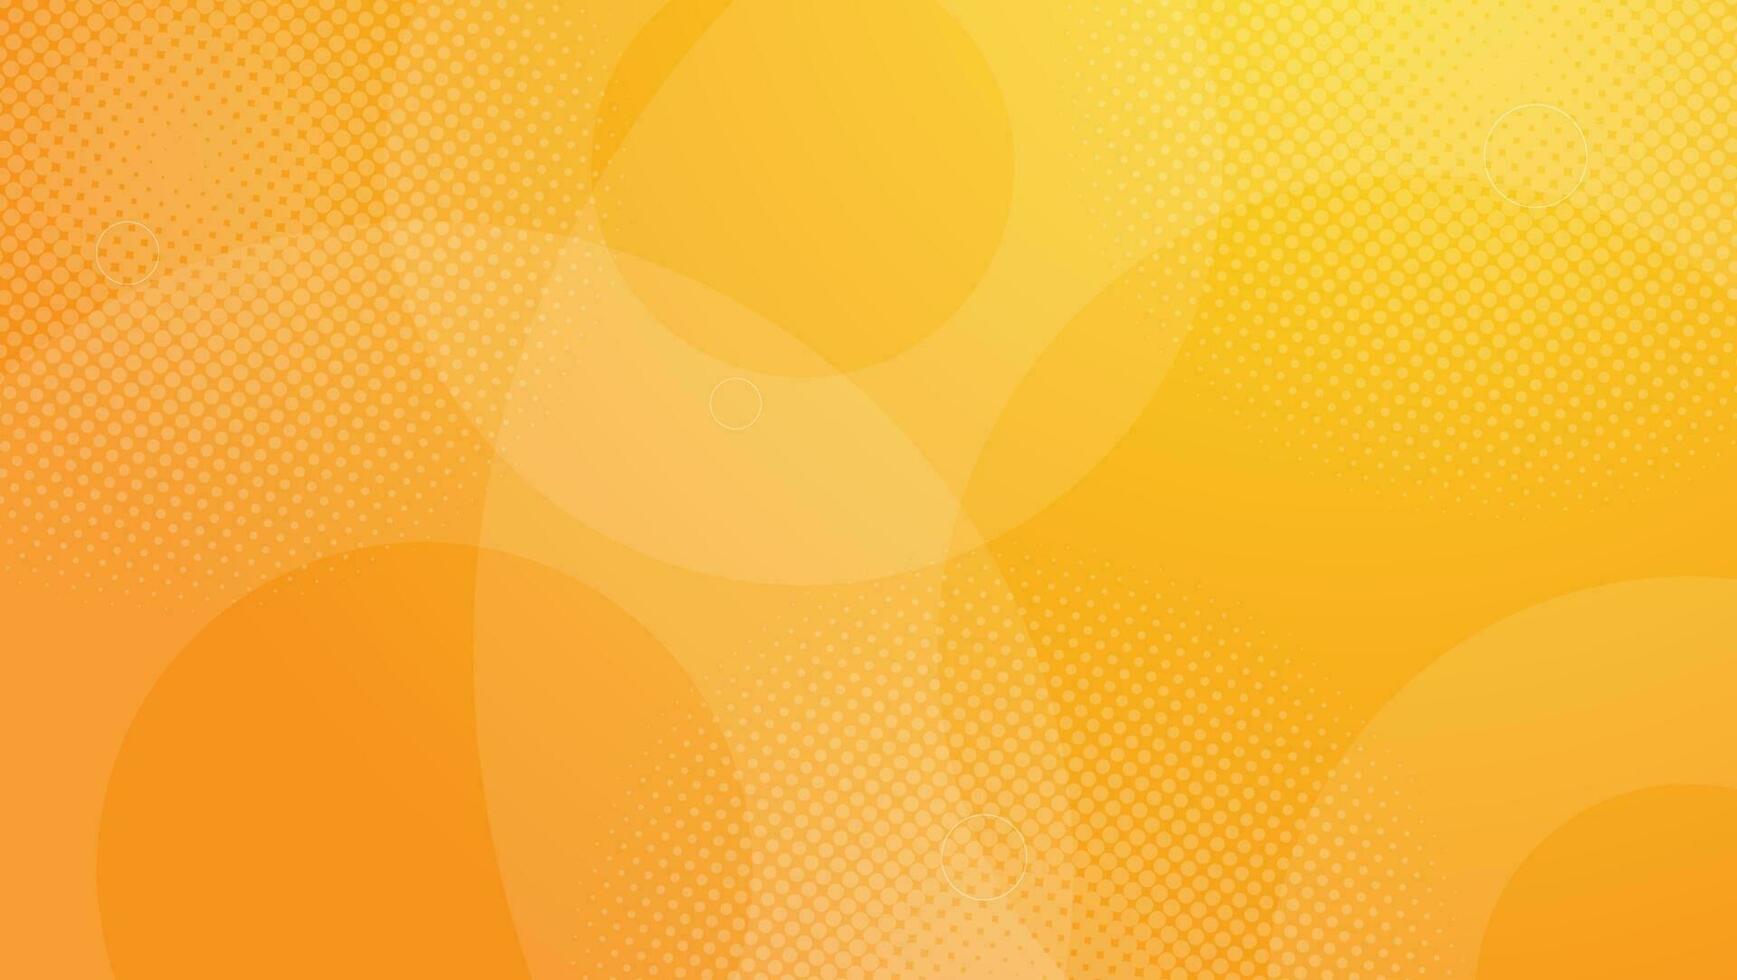 abstrait orange avec des formes circulaires et une composition en demi-teintes. illustration vectorielle vecteur